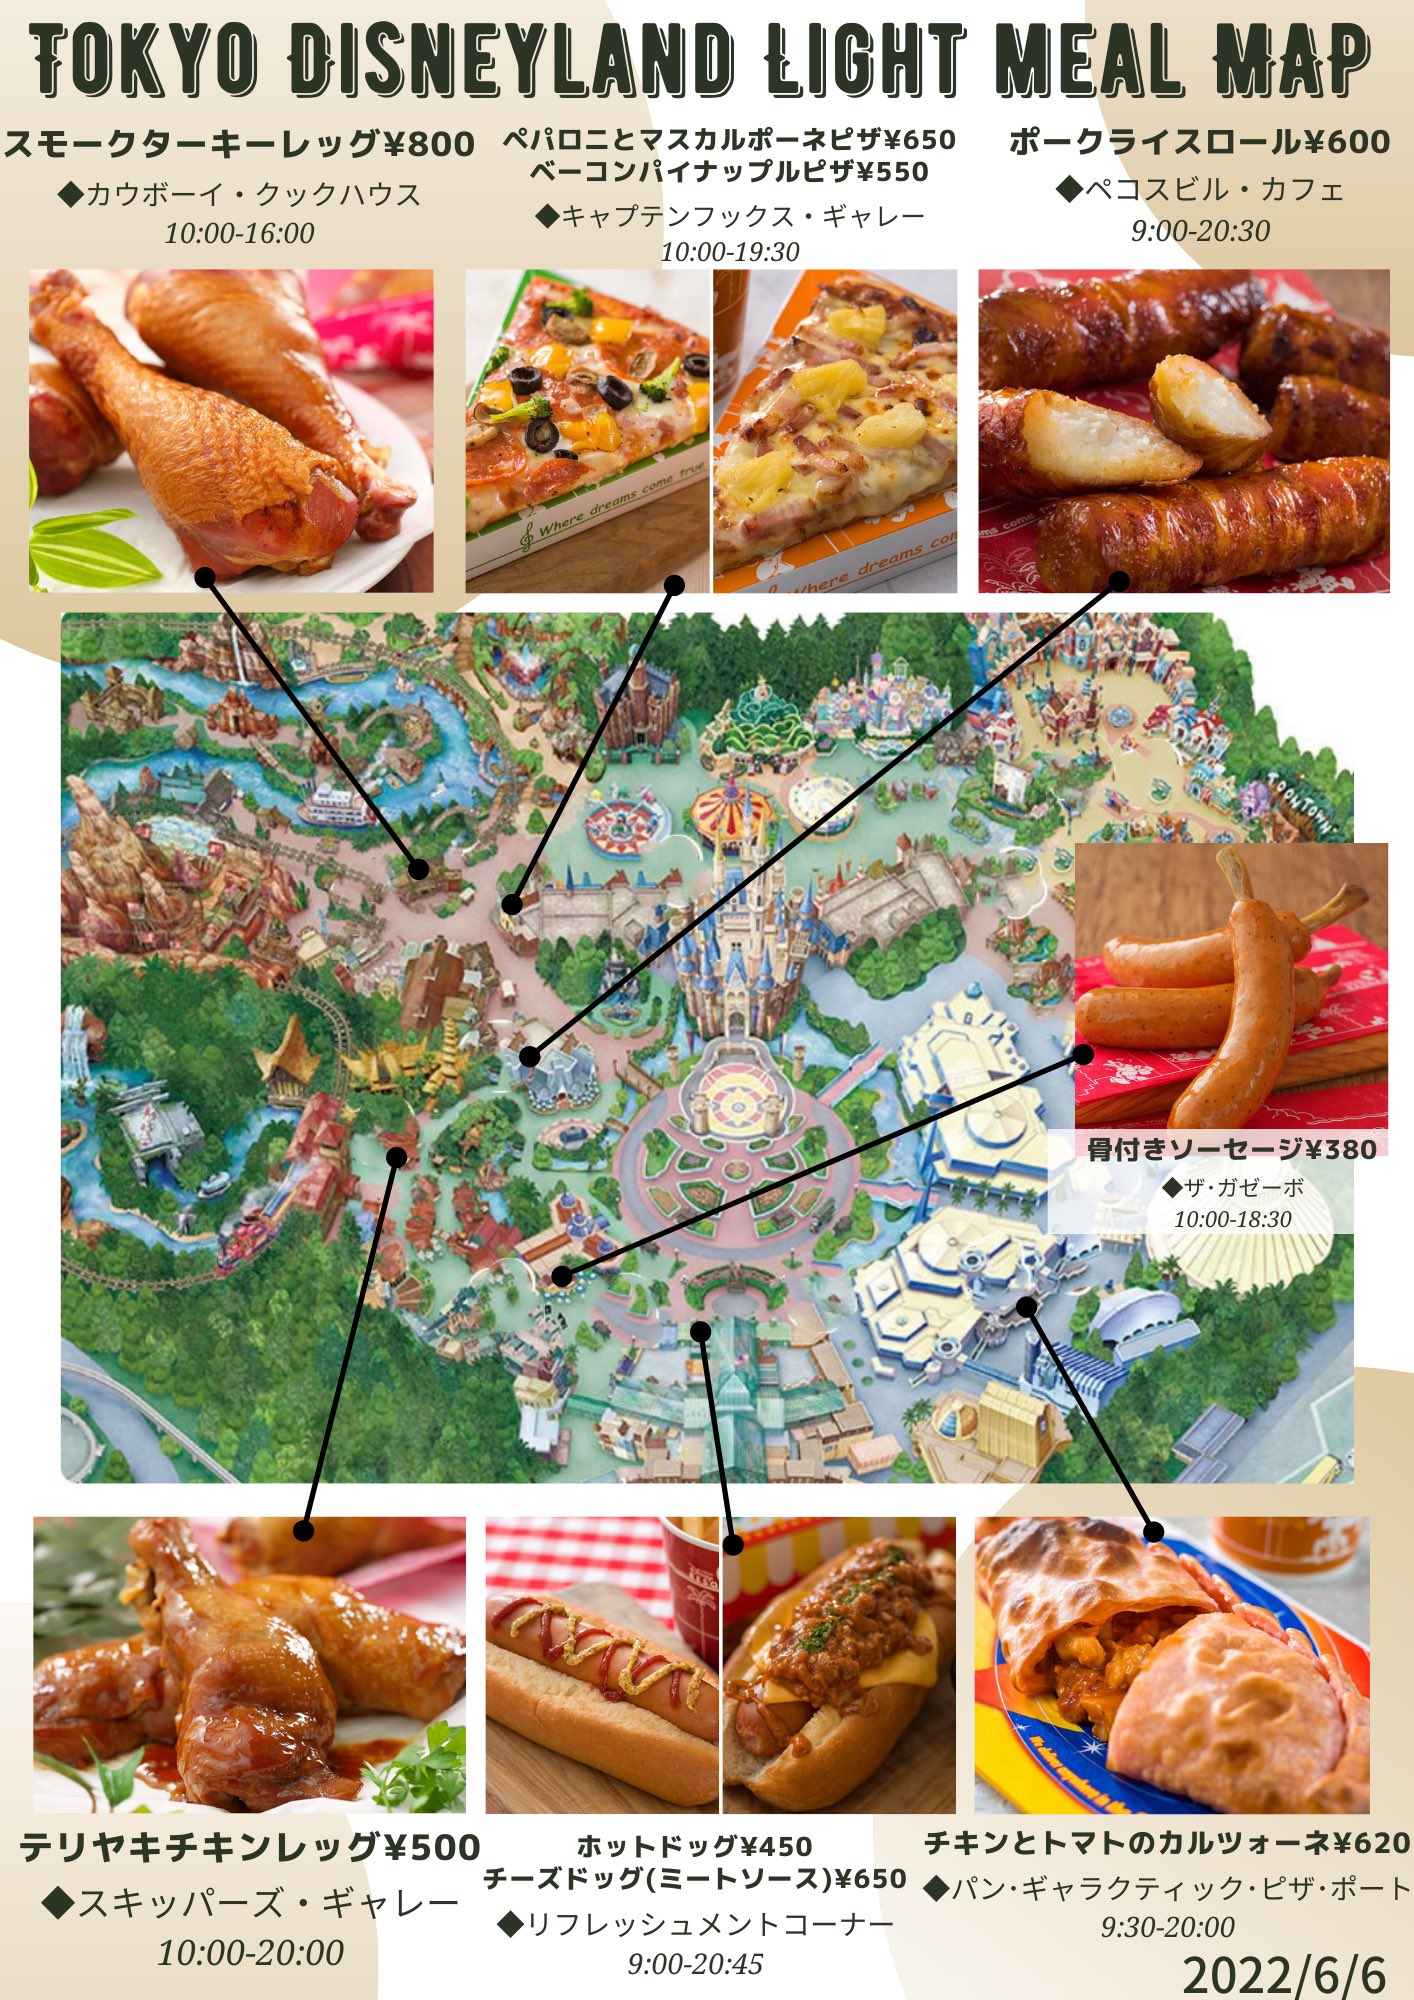 きょん マップ ディズニーランドで軽く食べたいときに便利な食べ歩きマップです どれが食べたいですか Tdr Food ディズニー ディズニーランド T Co Fw6gqrufqd Twitter